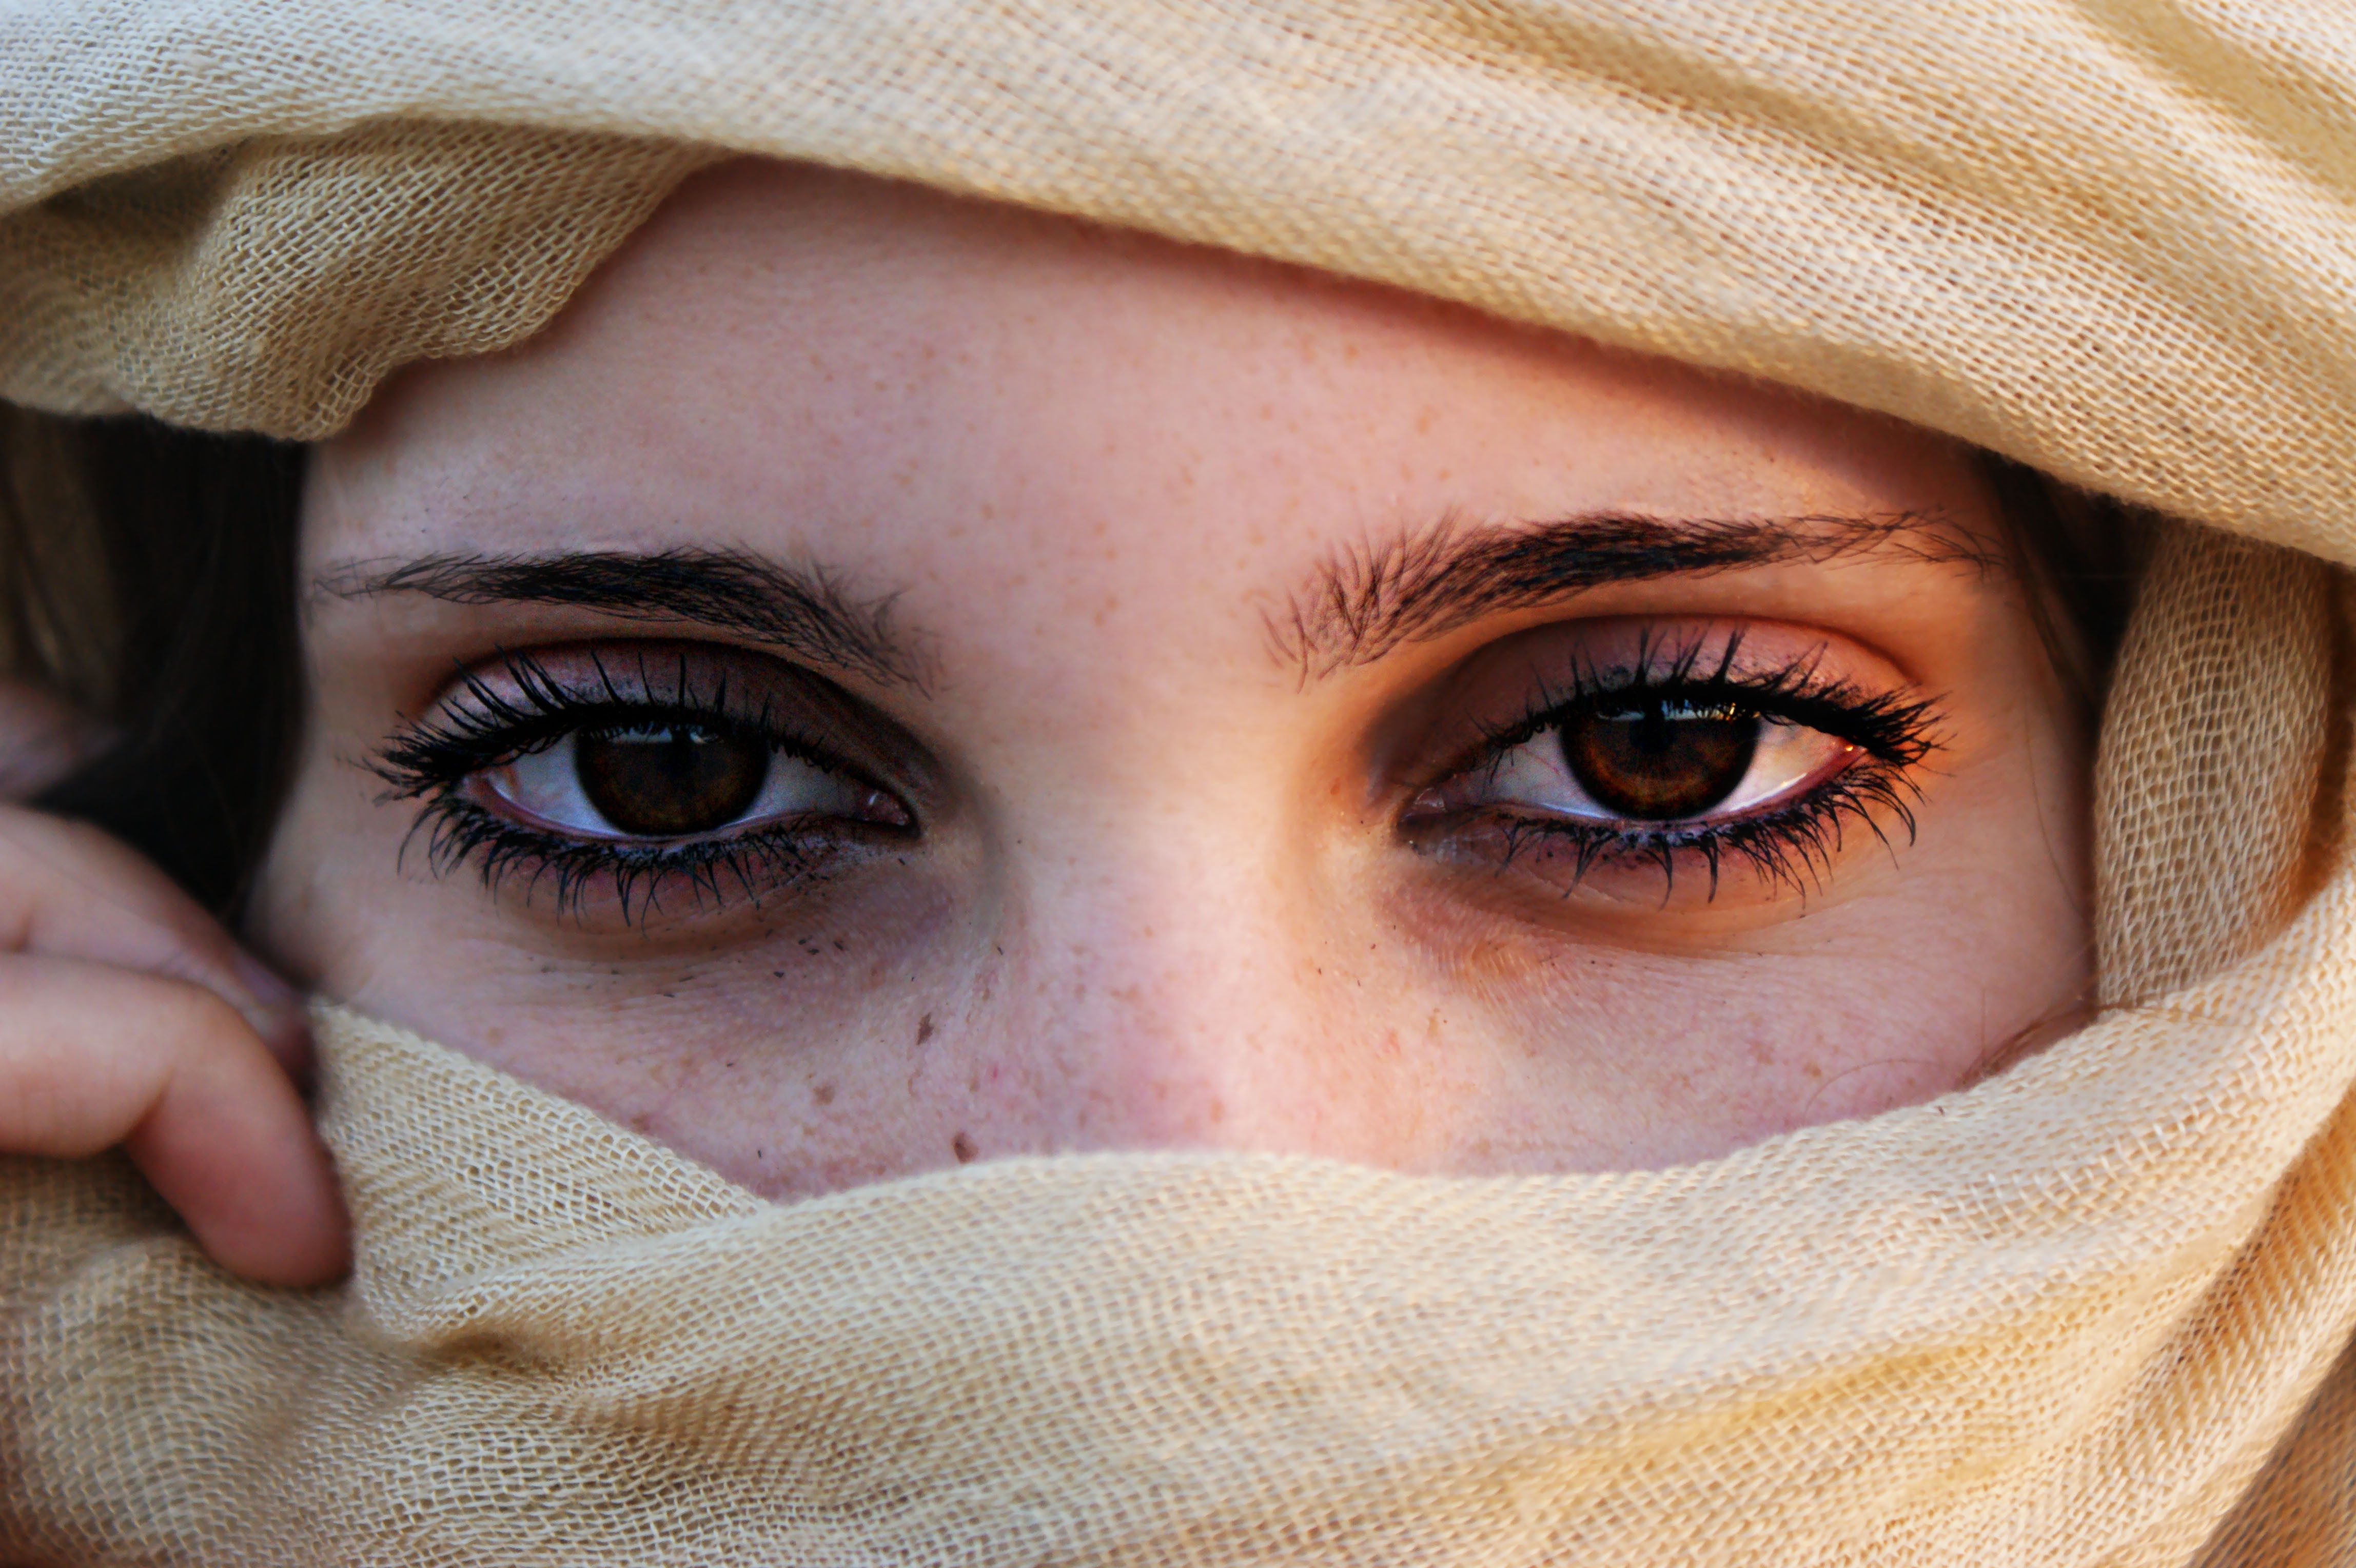 People 4592x3056 face eyes women brown eyes closeup Muslim freckles looking at viewer